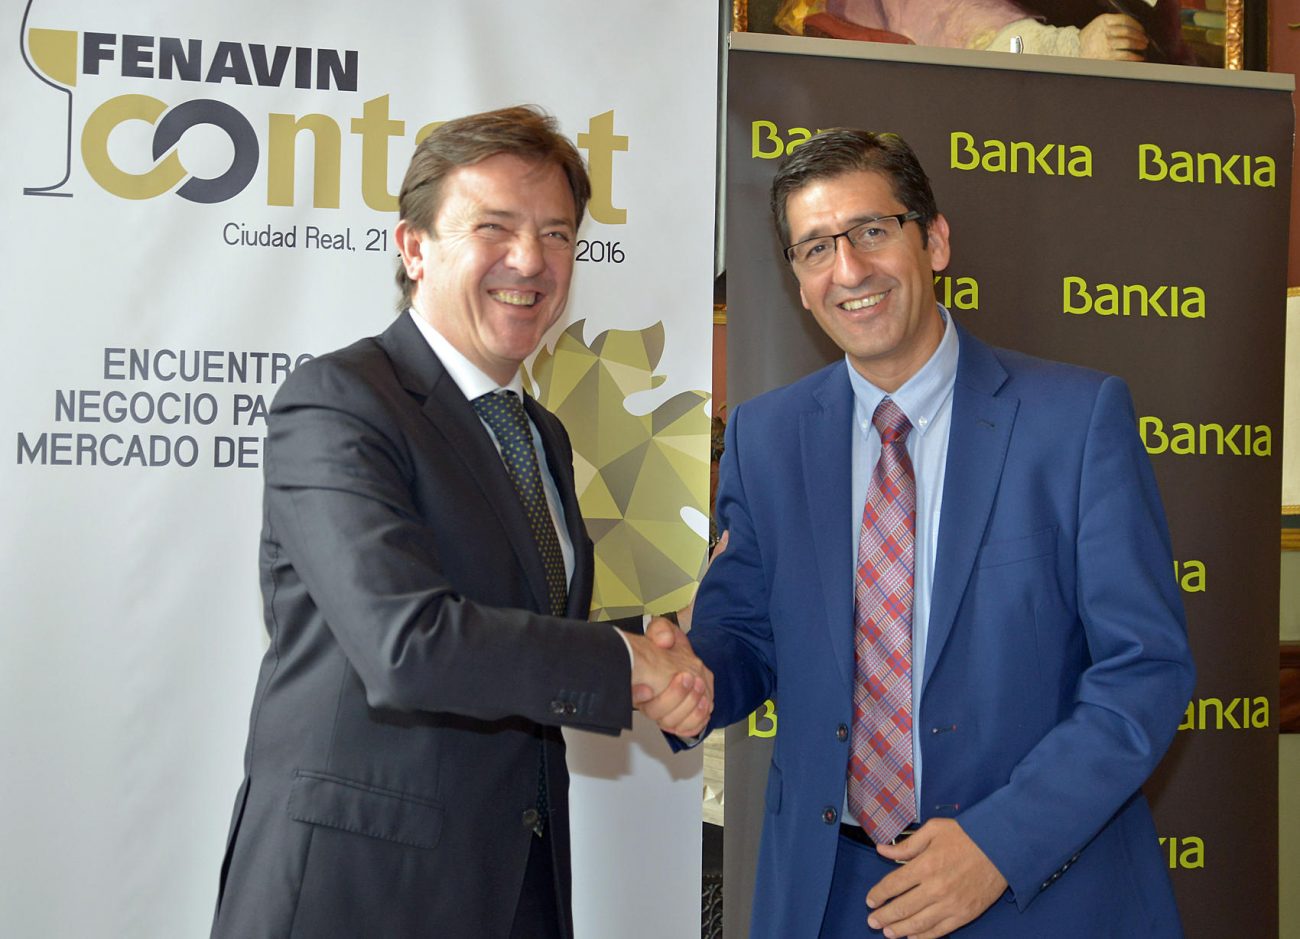 Bankia aporta 15.000 euros a la organización del encuentro de negocio FENAVIN CONTACT